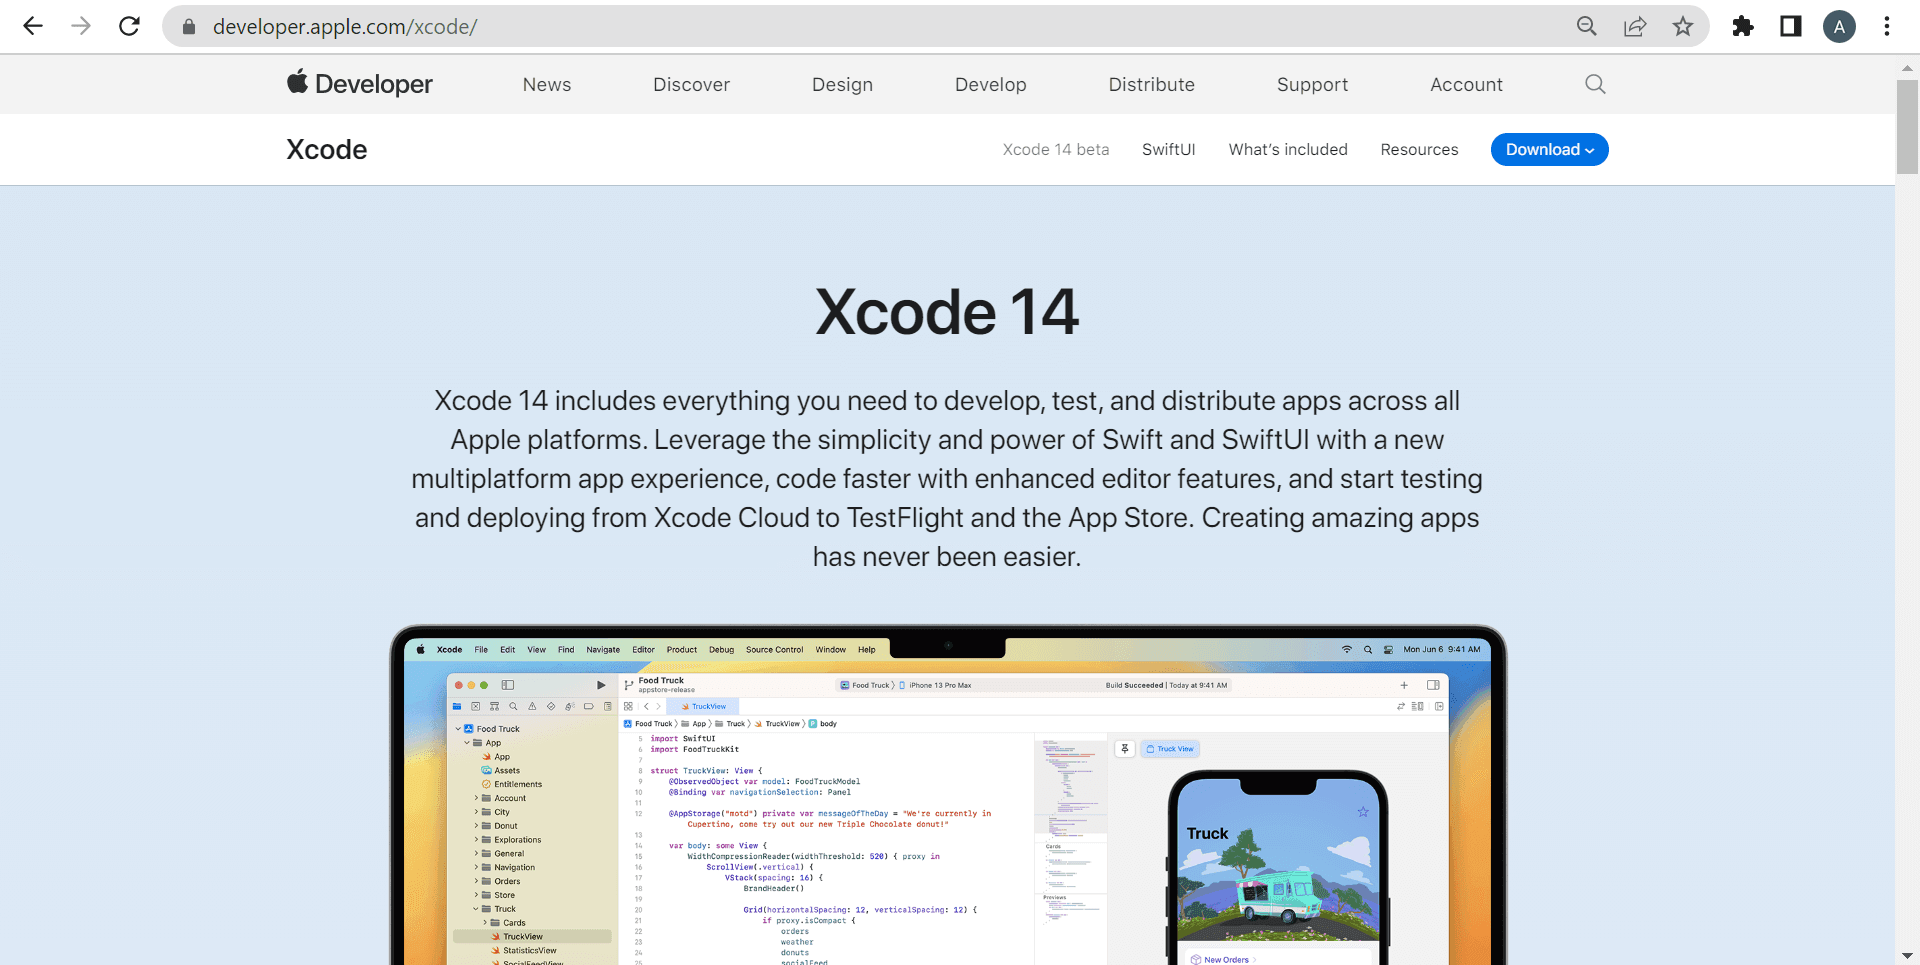 Select Xcode